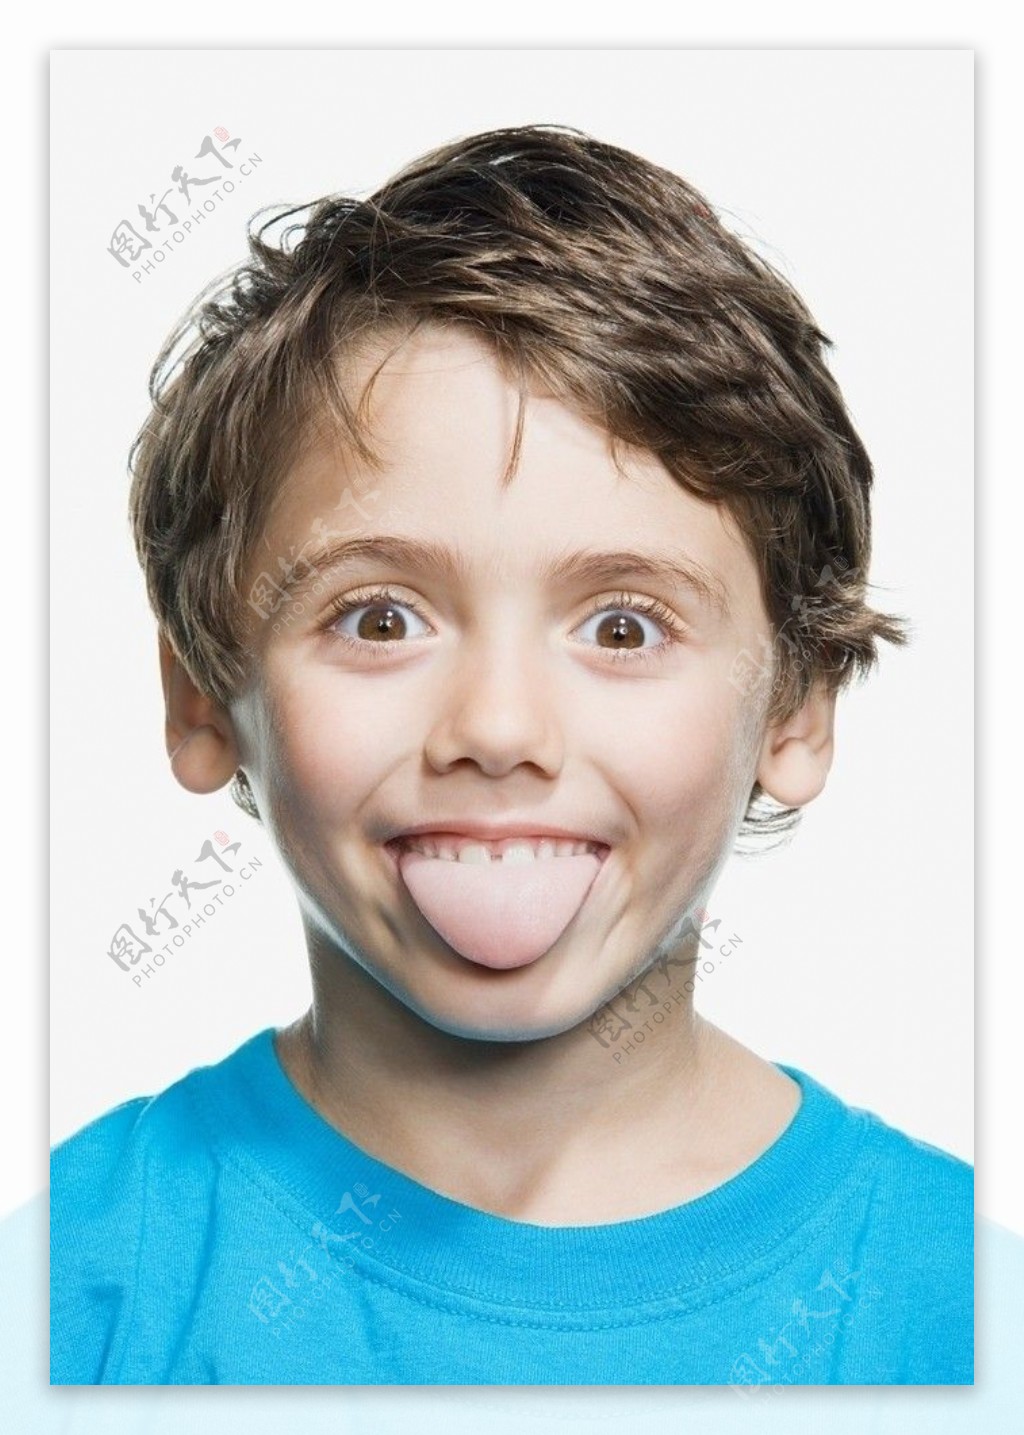 伸舌头做鬼脸的小男孩图片